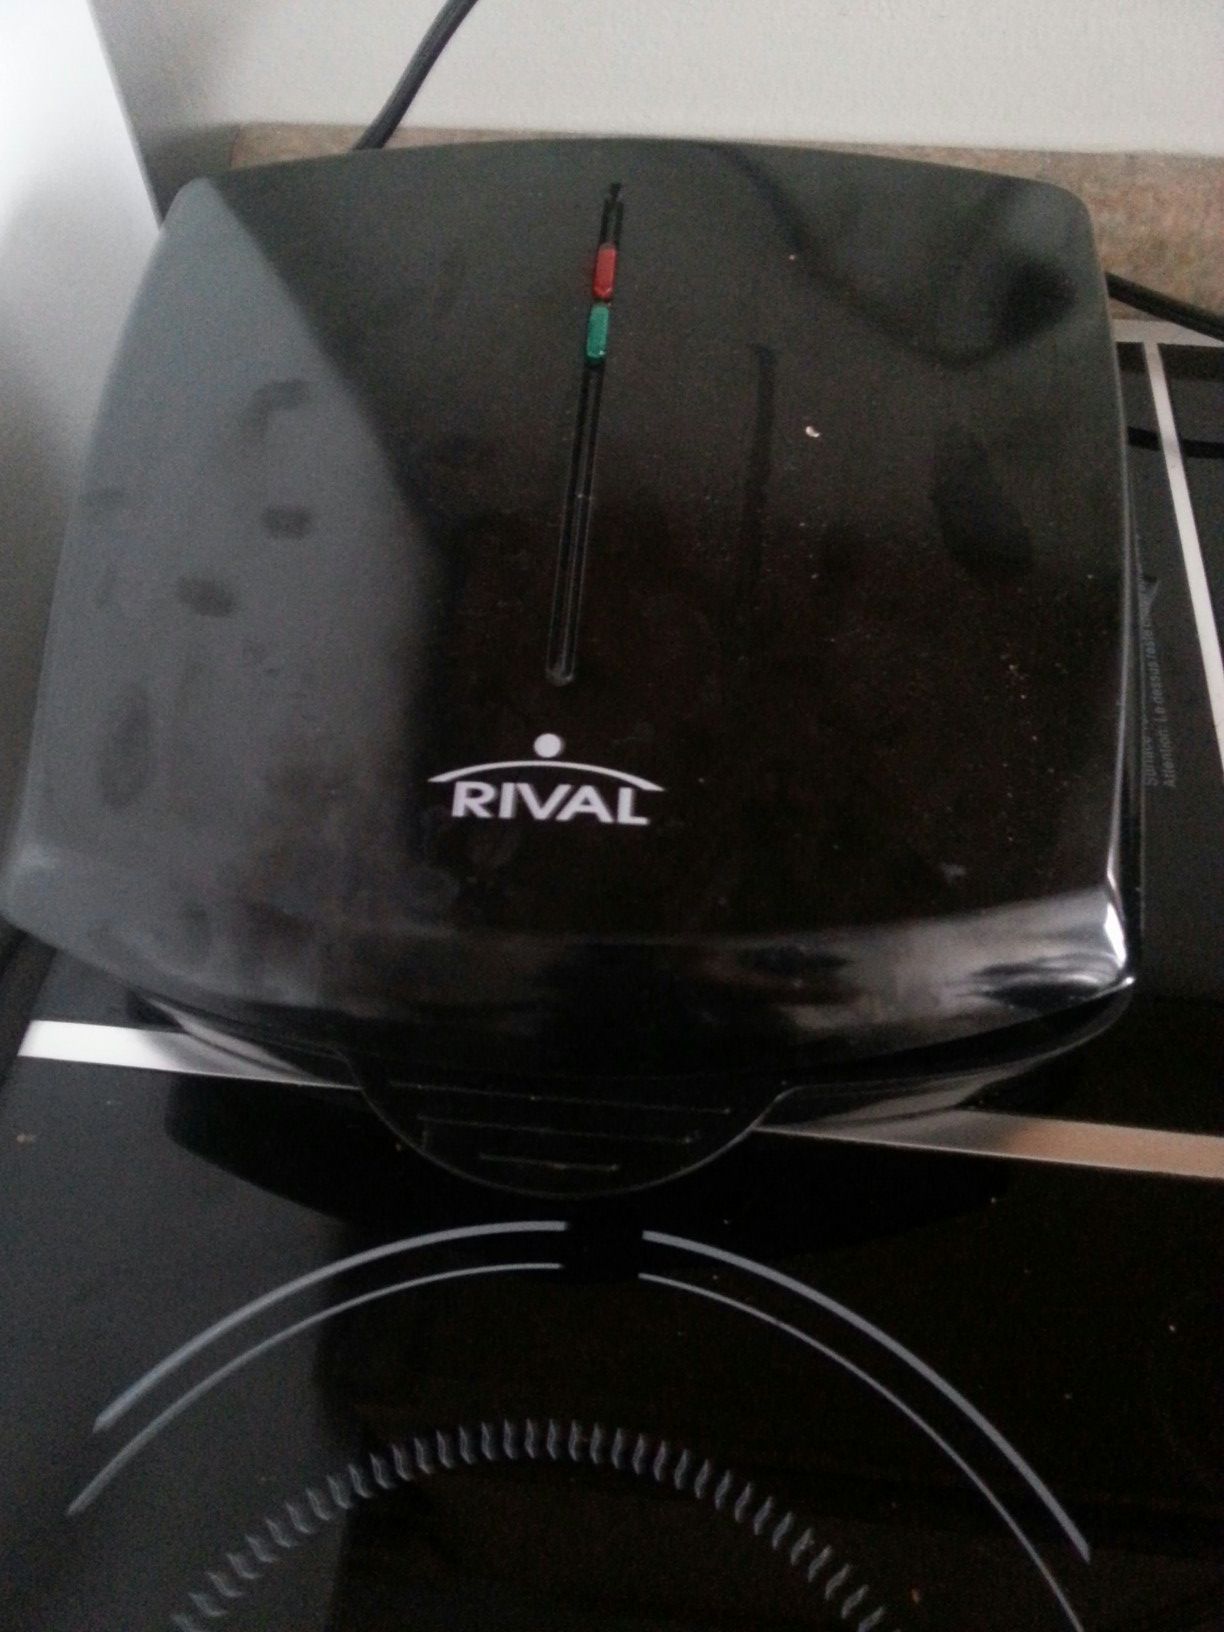 Rival mini grill $5